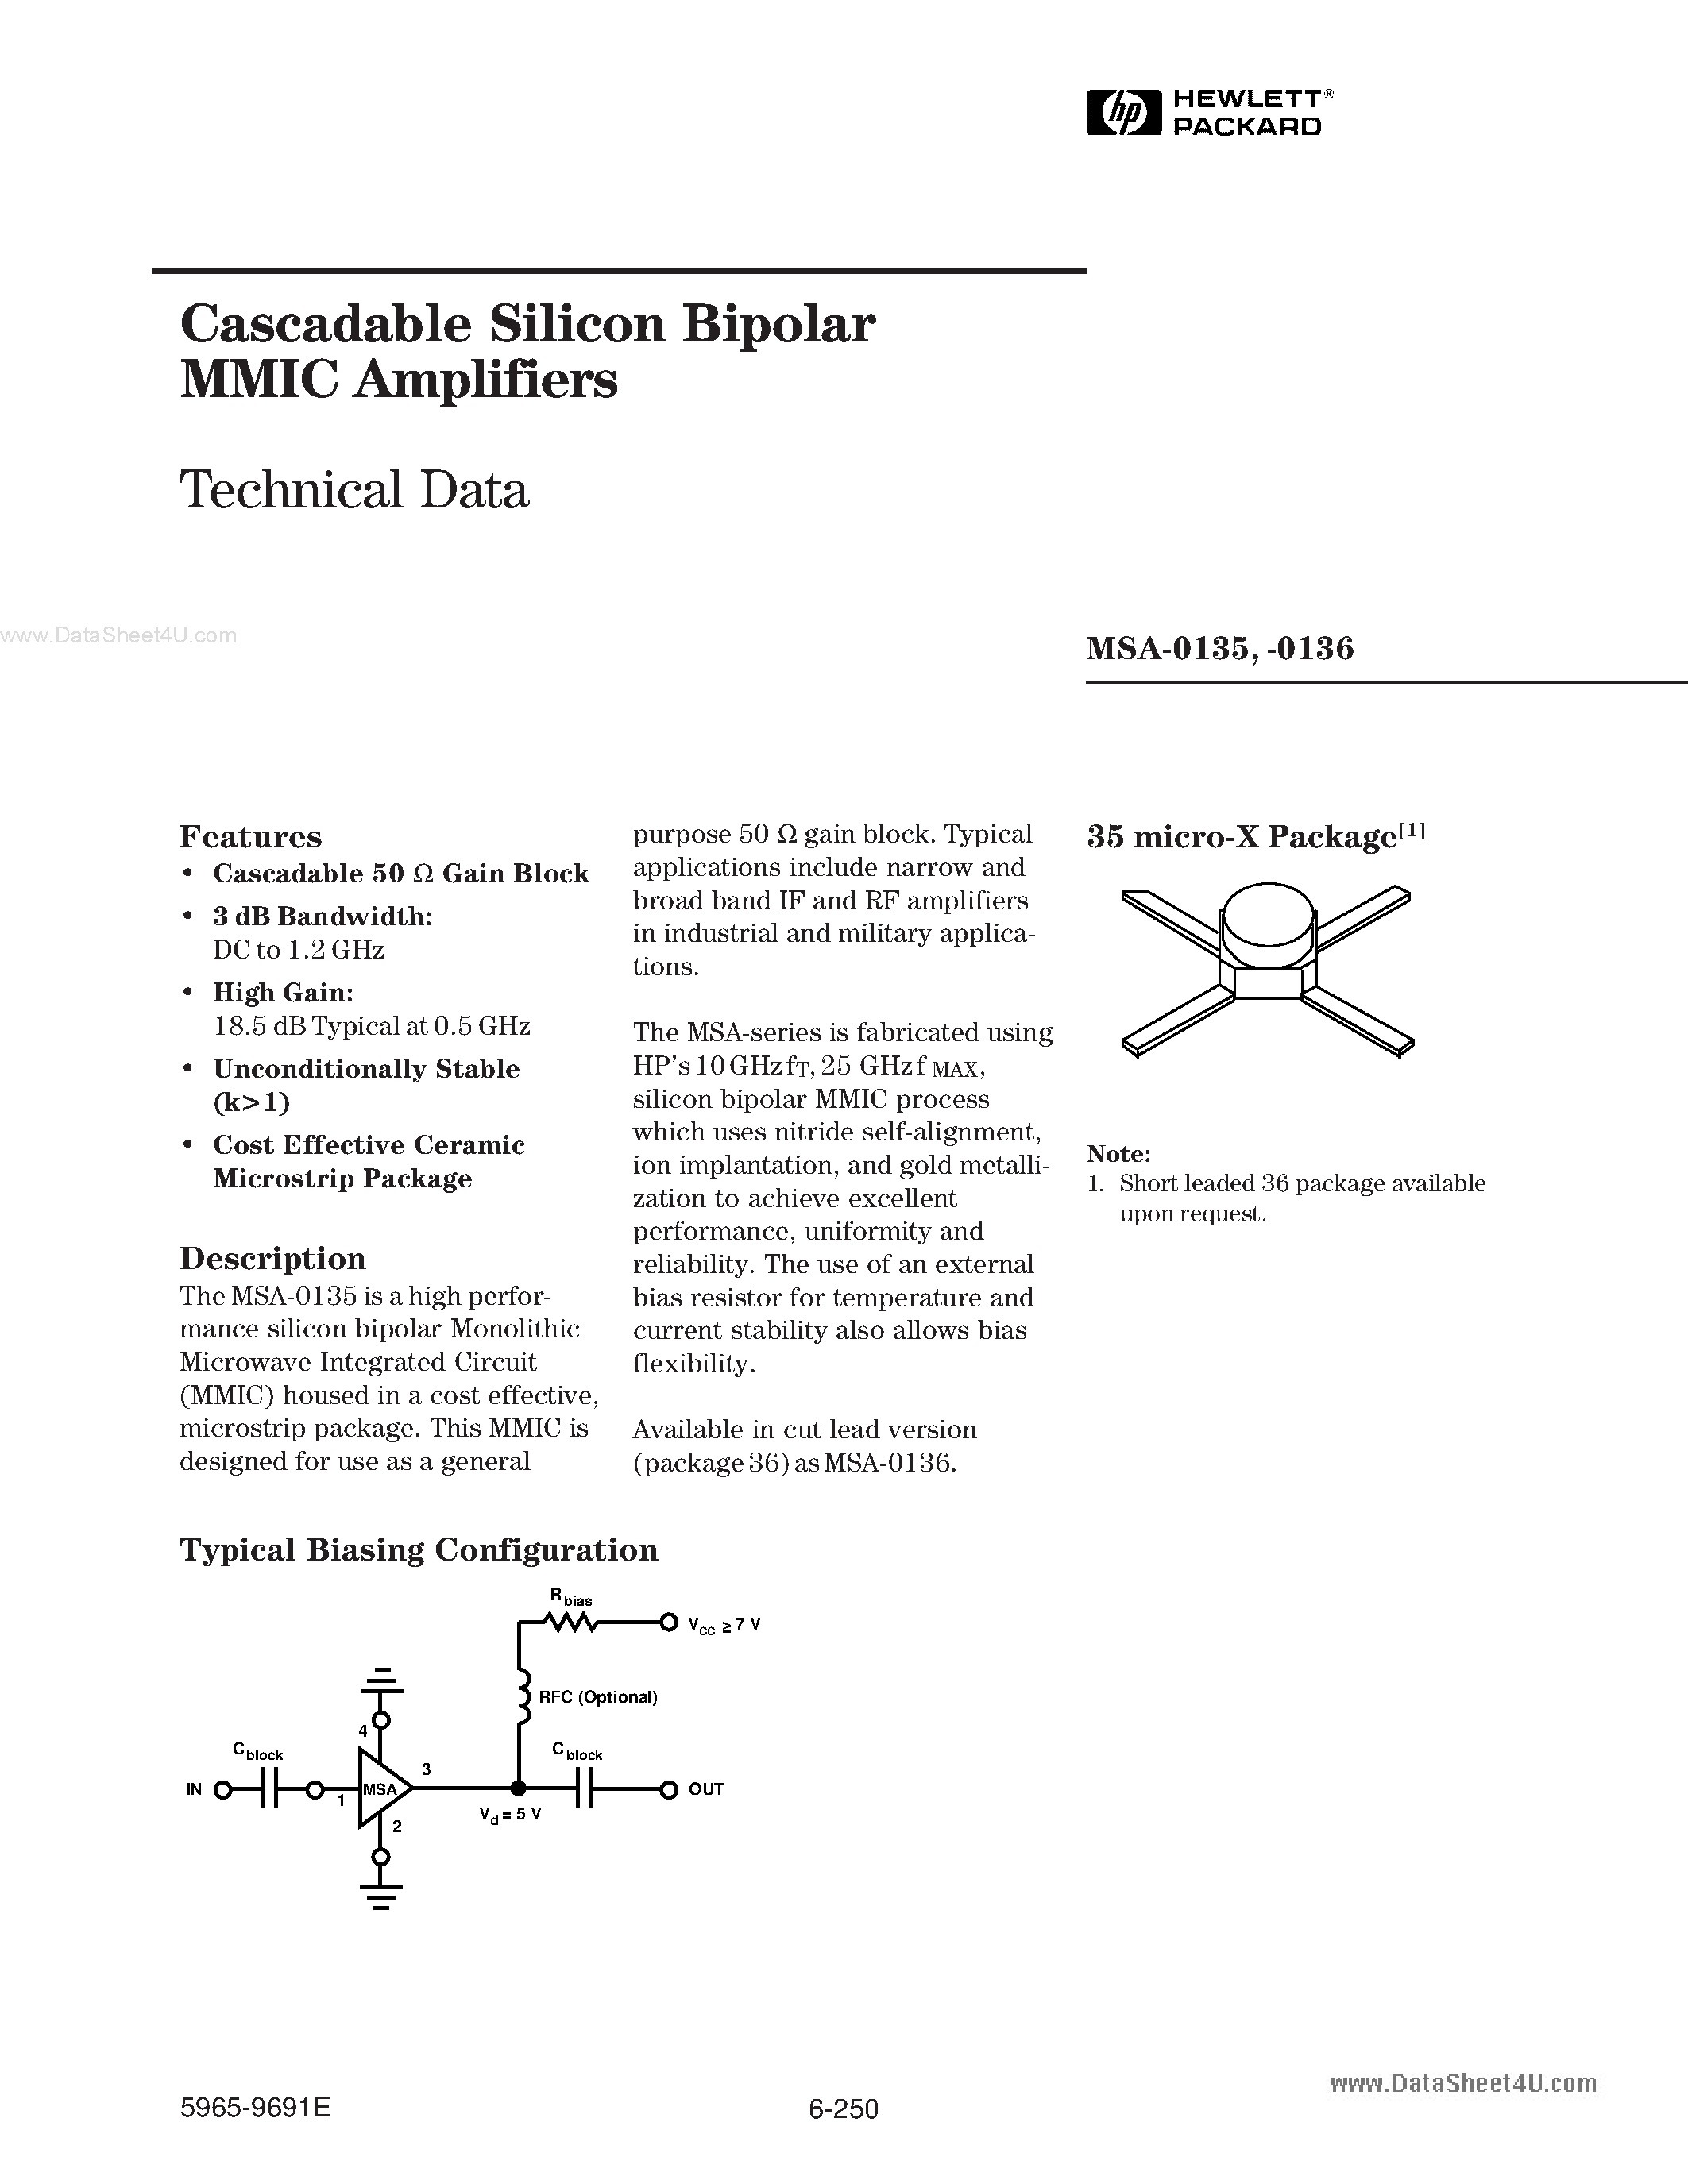 Даташит MSA-0135 - (MSA-0135 / MSA-0136) Cascadable Silicon Bipolar MMIC Amplifier страница 1